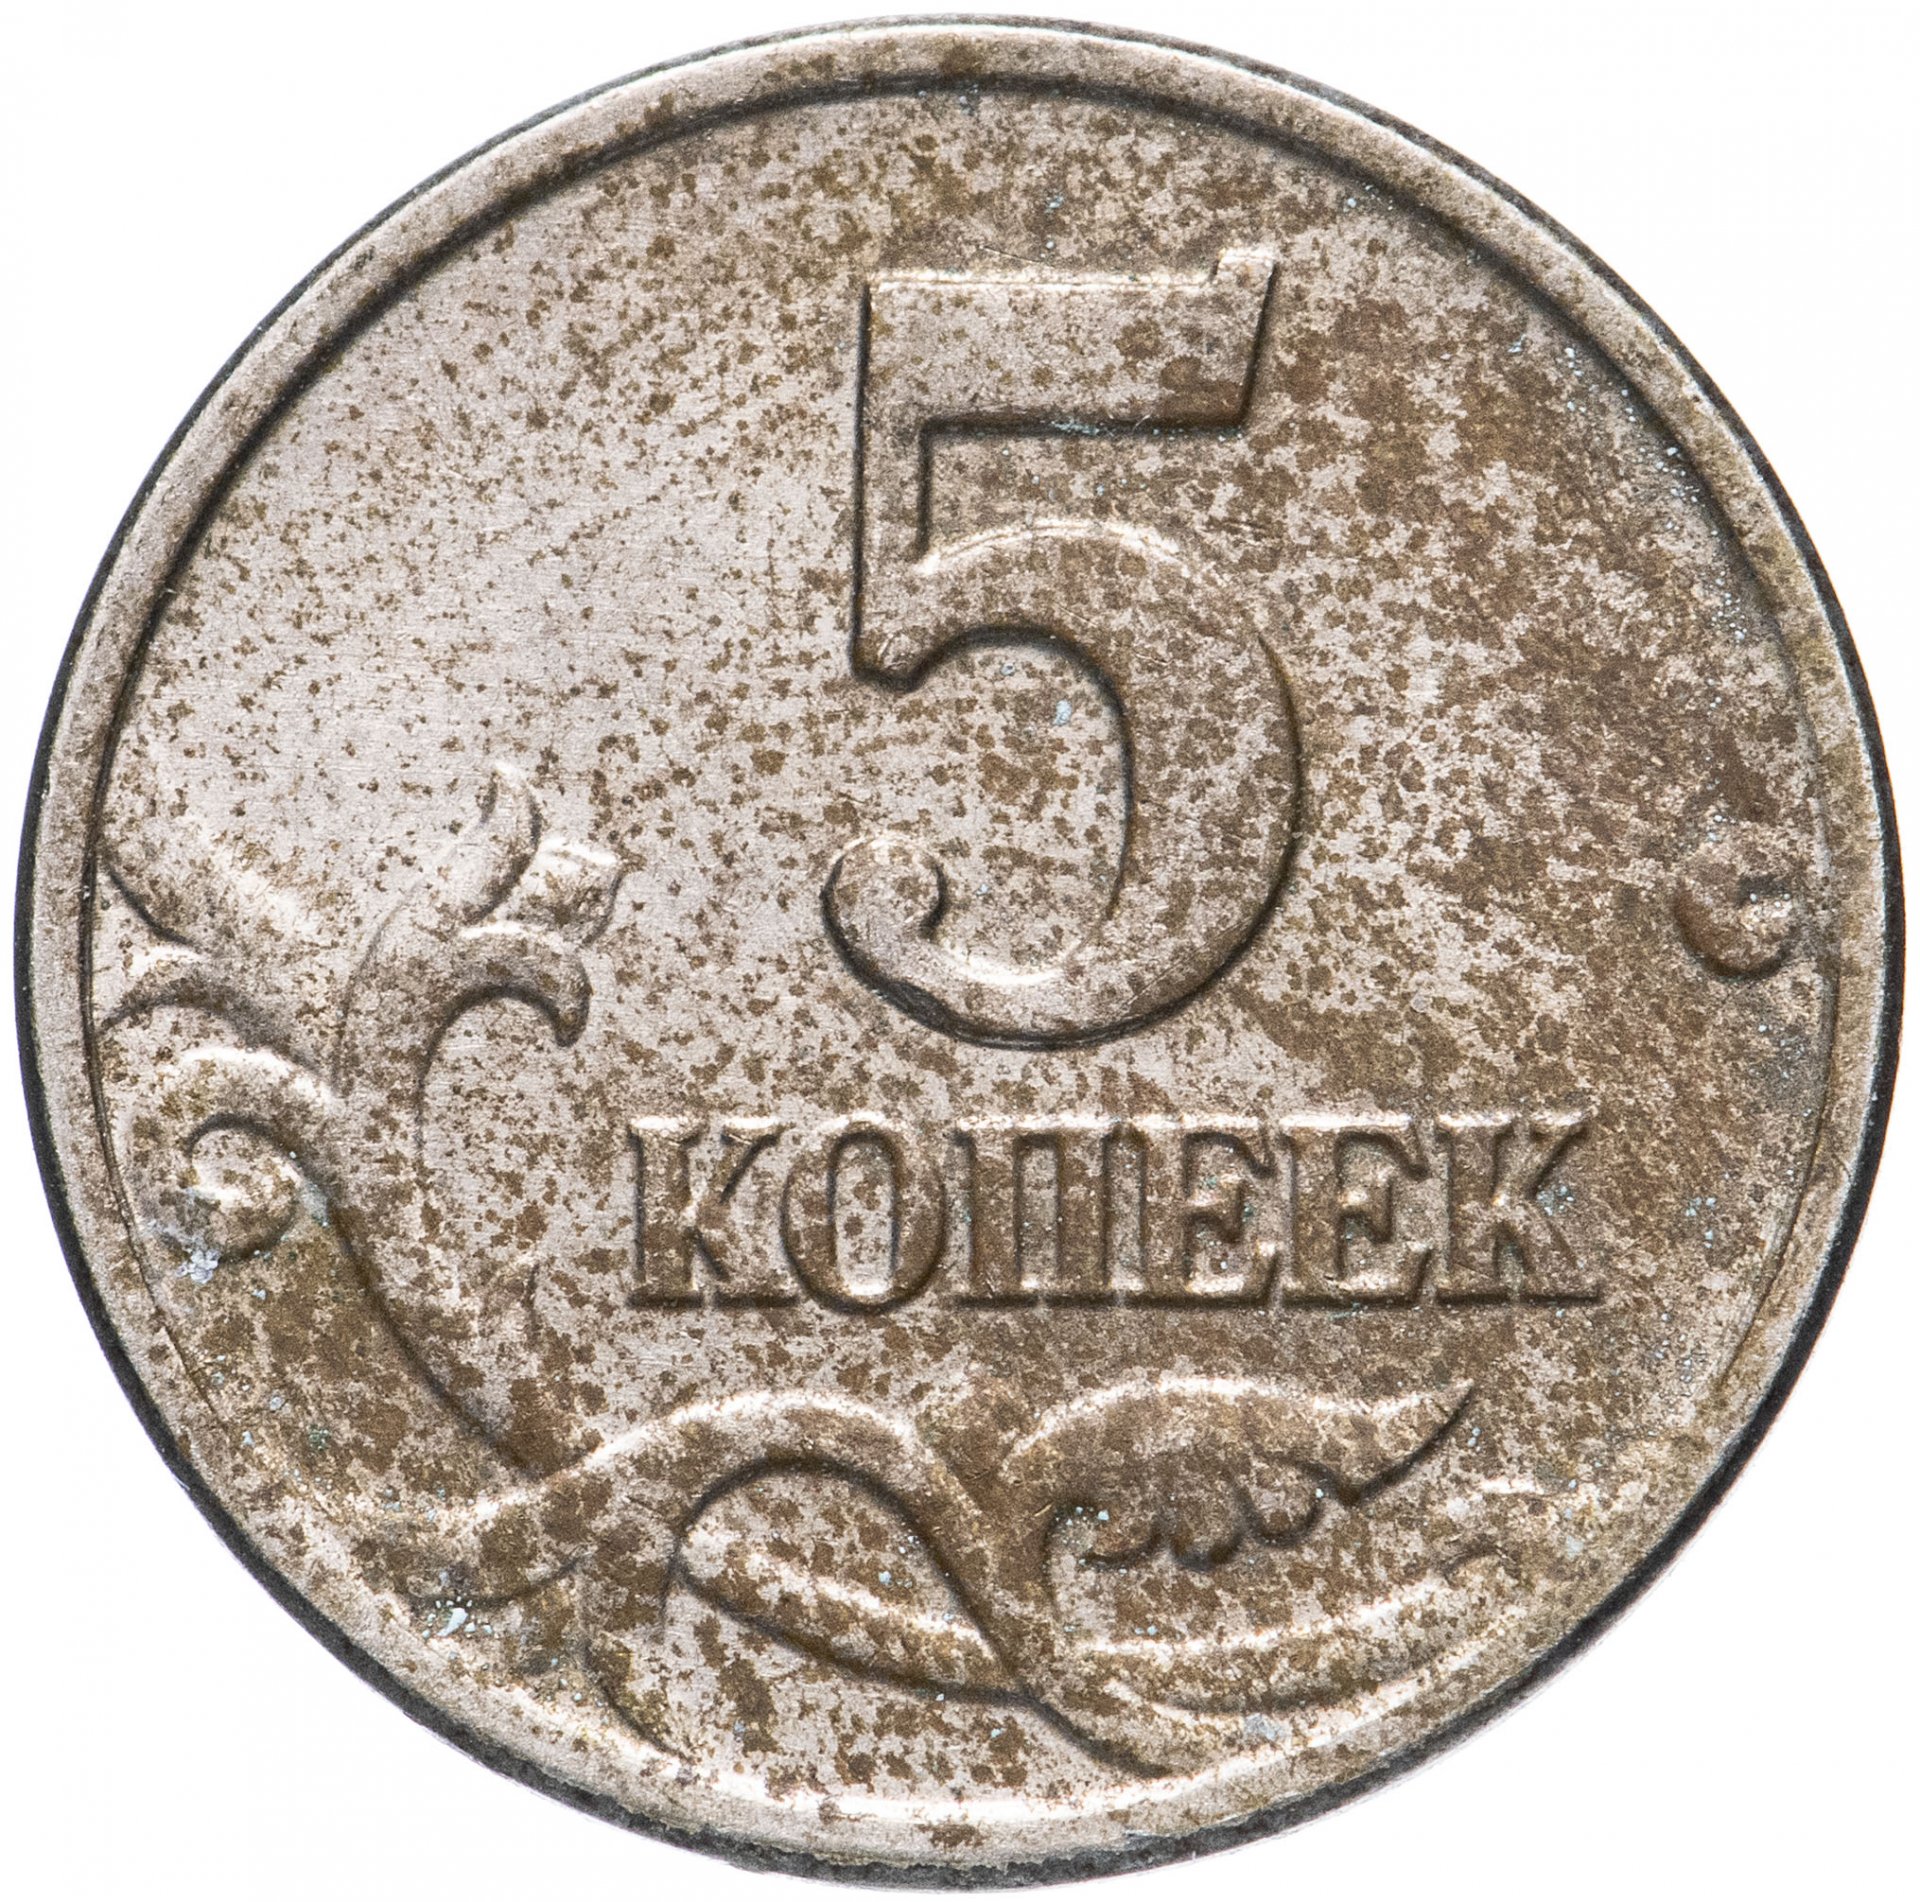 5 Копеек с монетным двором